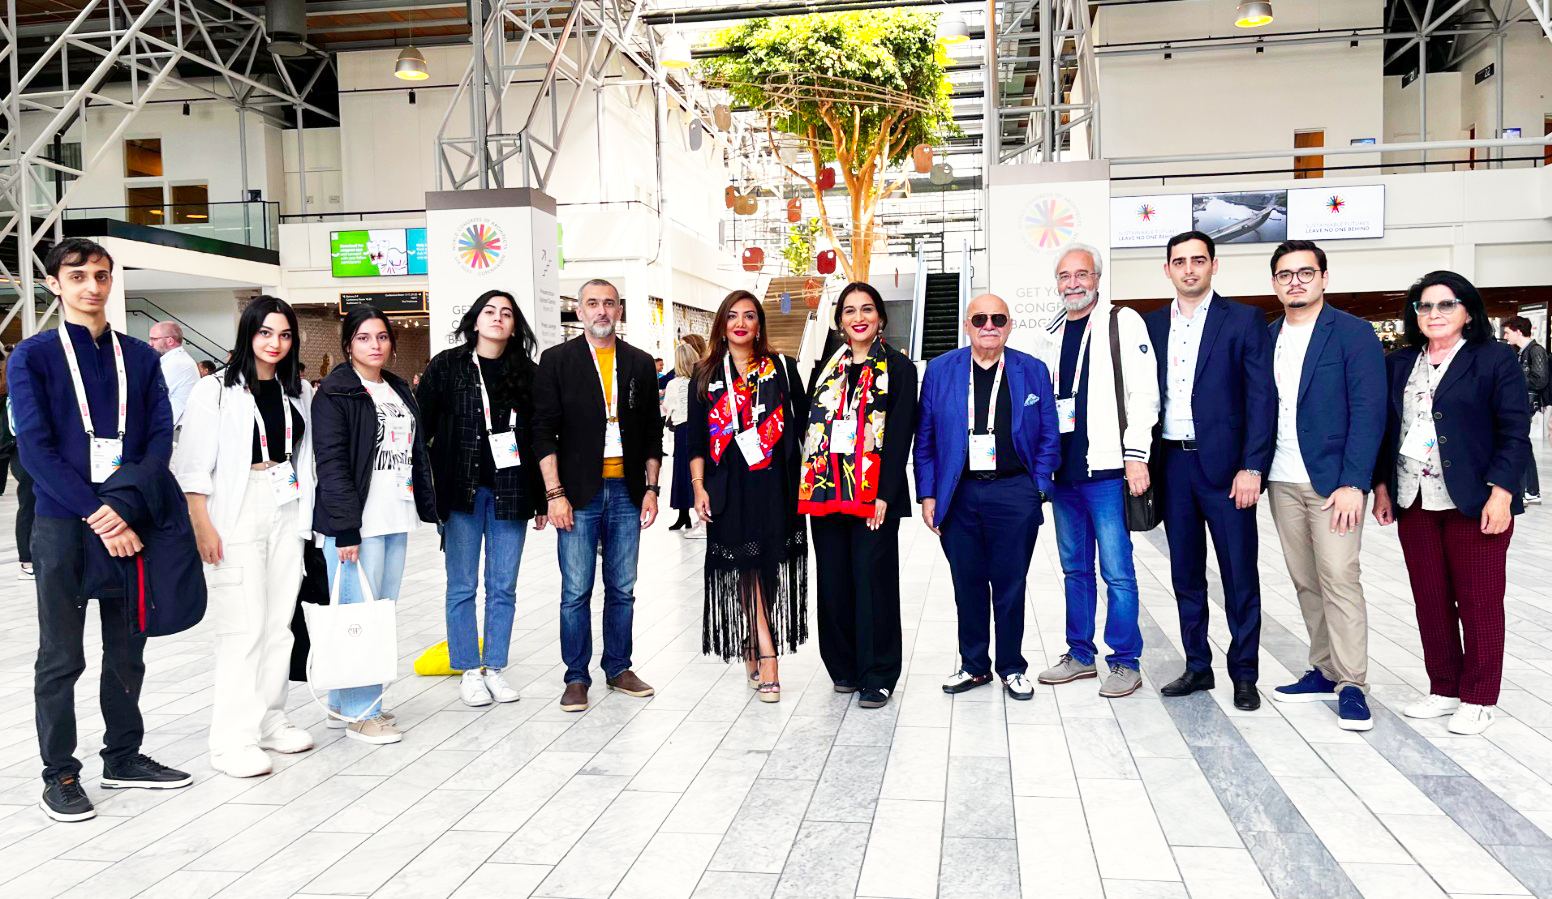 Азербайджанские архитекторы  приняли участие во Всемирном конгрессе архитекторов в Копенгагене (ФОТО)